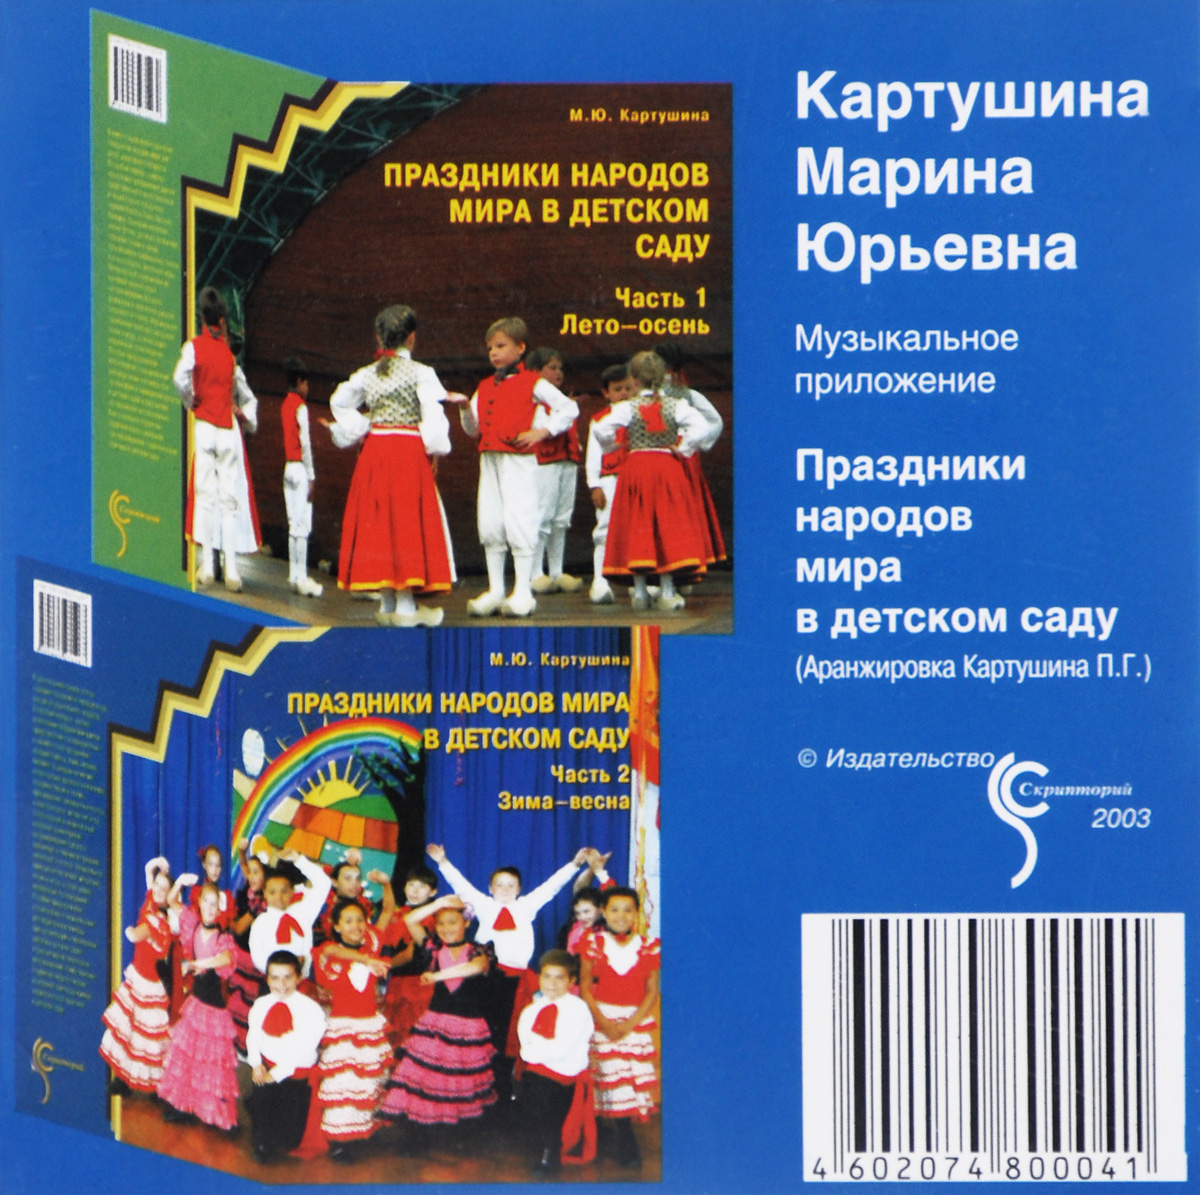 Праздники народов мира в детском саду. Музыкальное приложение (CD)